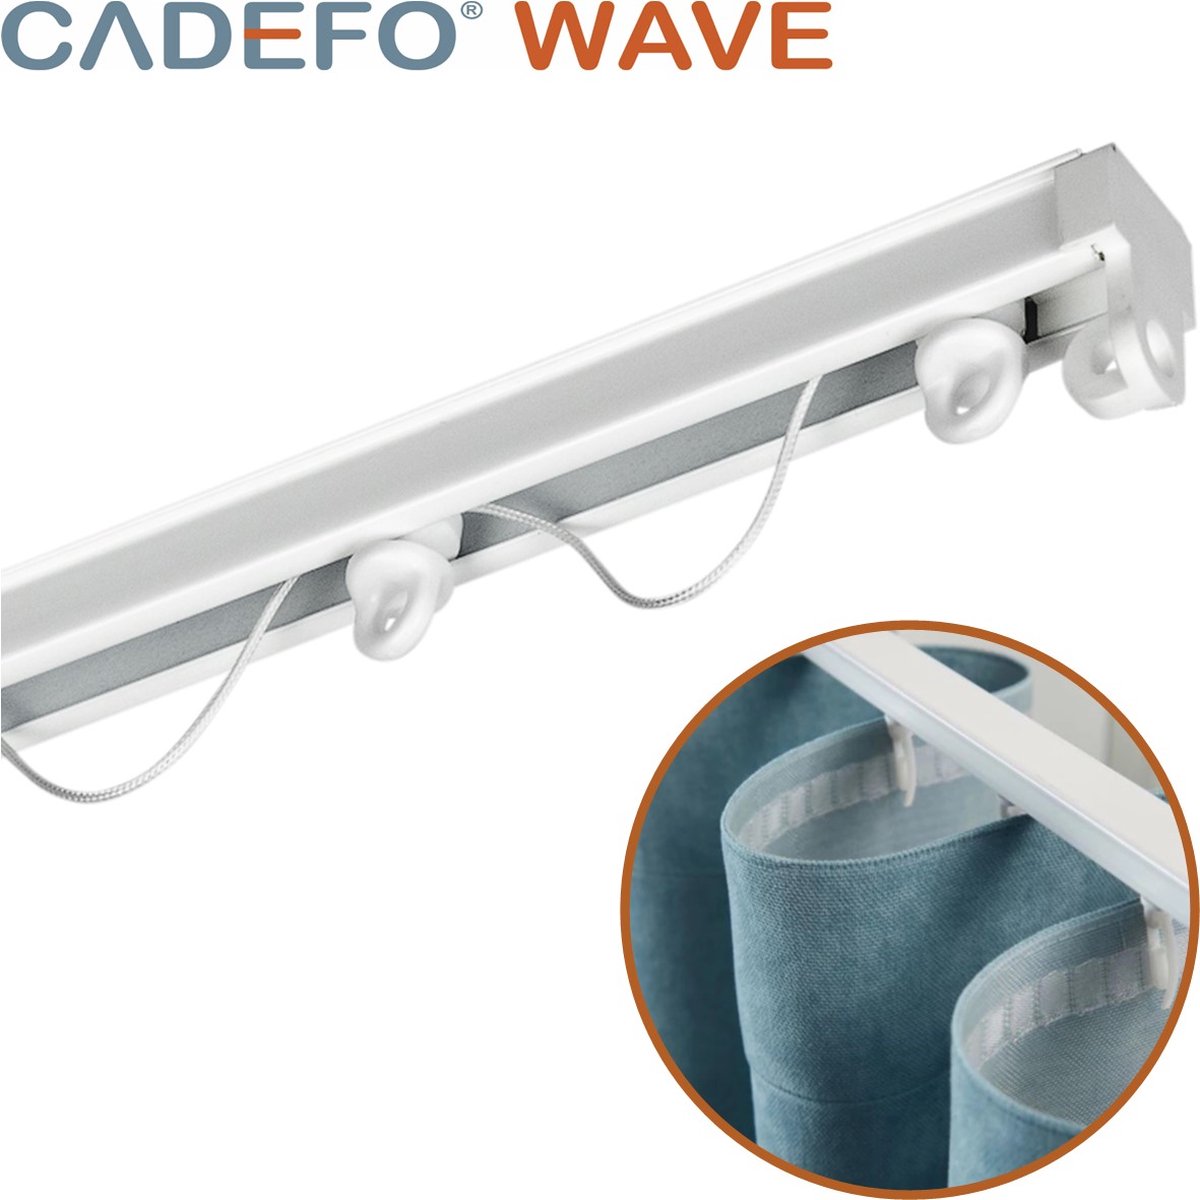 CADEFO WAVE (501 - 550 cm) Gordijnrails - Compleet op maat! - UIT 1 STUK - Leverbaar tot 6 meter - Plafondbevestiging - Lengte 518 cm